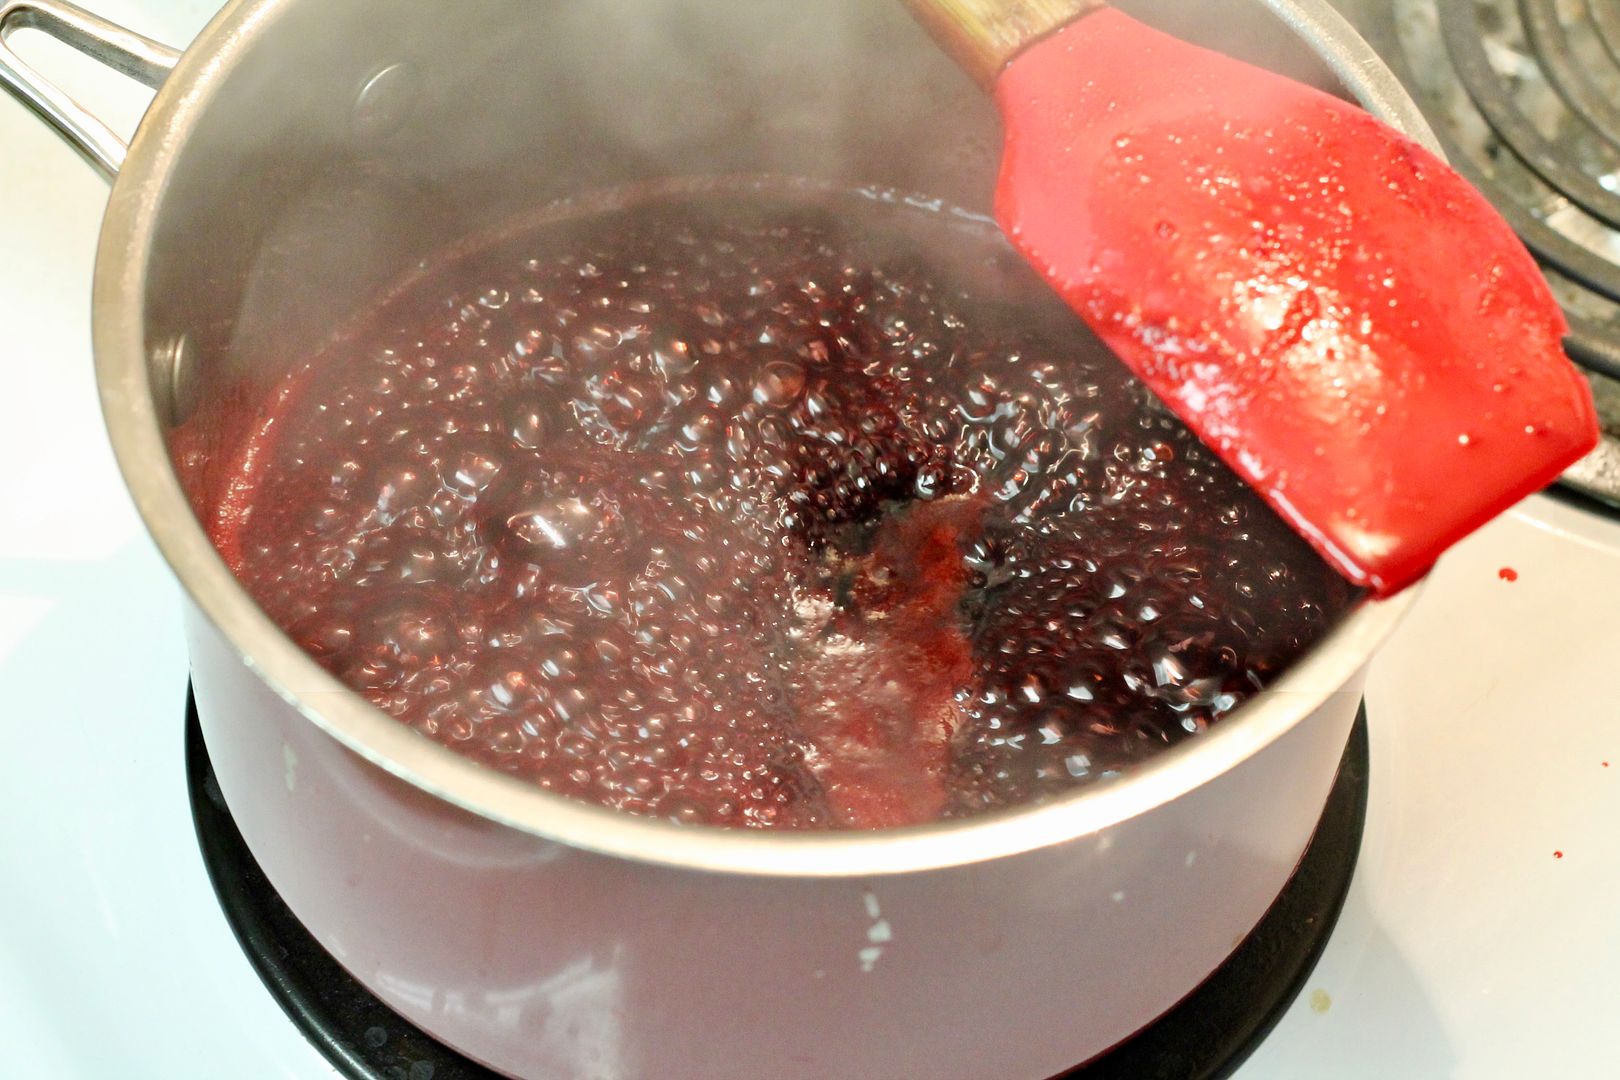 making jam